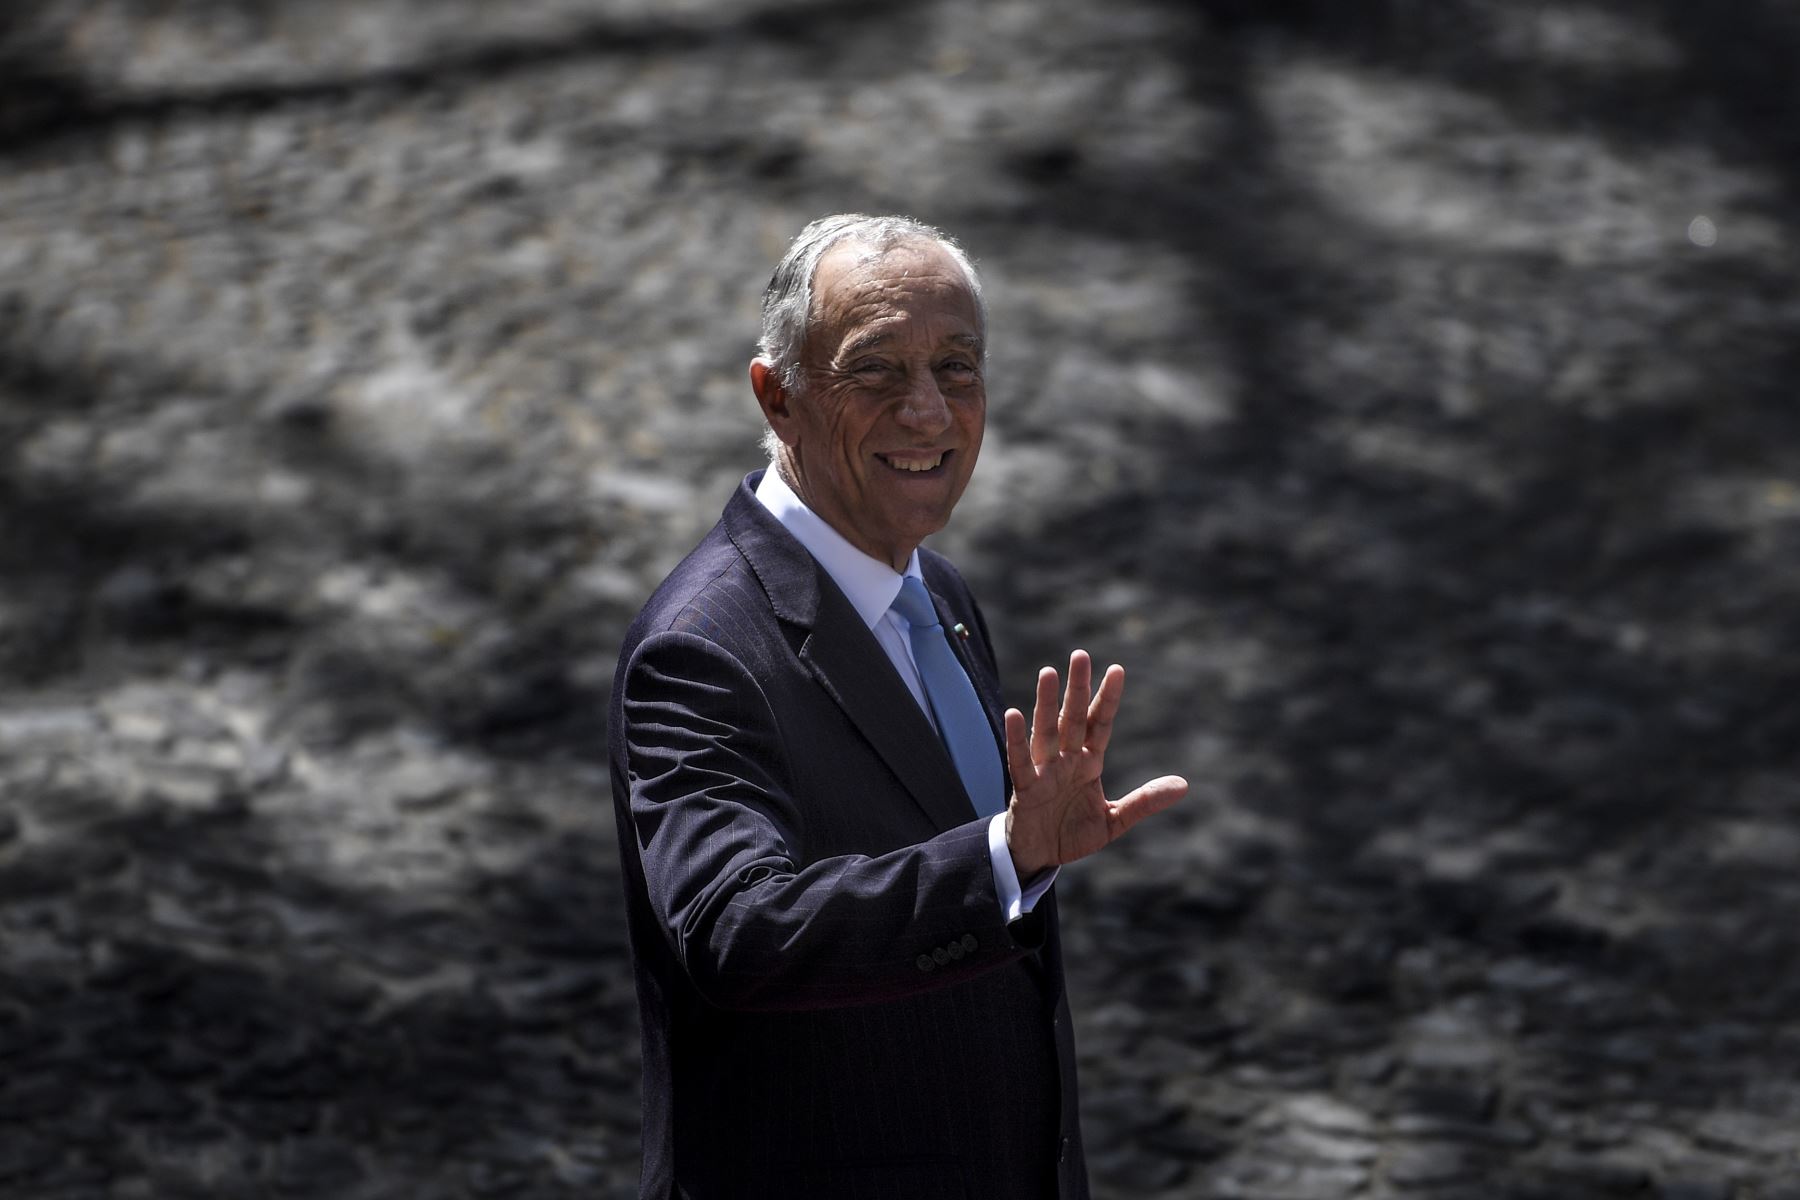 El jefe de Estado, de 72 años, es "asintomático" y se aisló en la parte residencial del palacio presidencial, en Lisboa, precisaron sus servicios en un comunicado. Foto: AFP